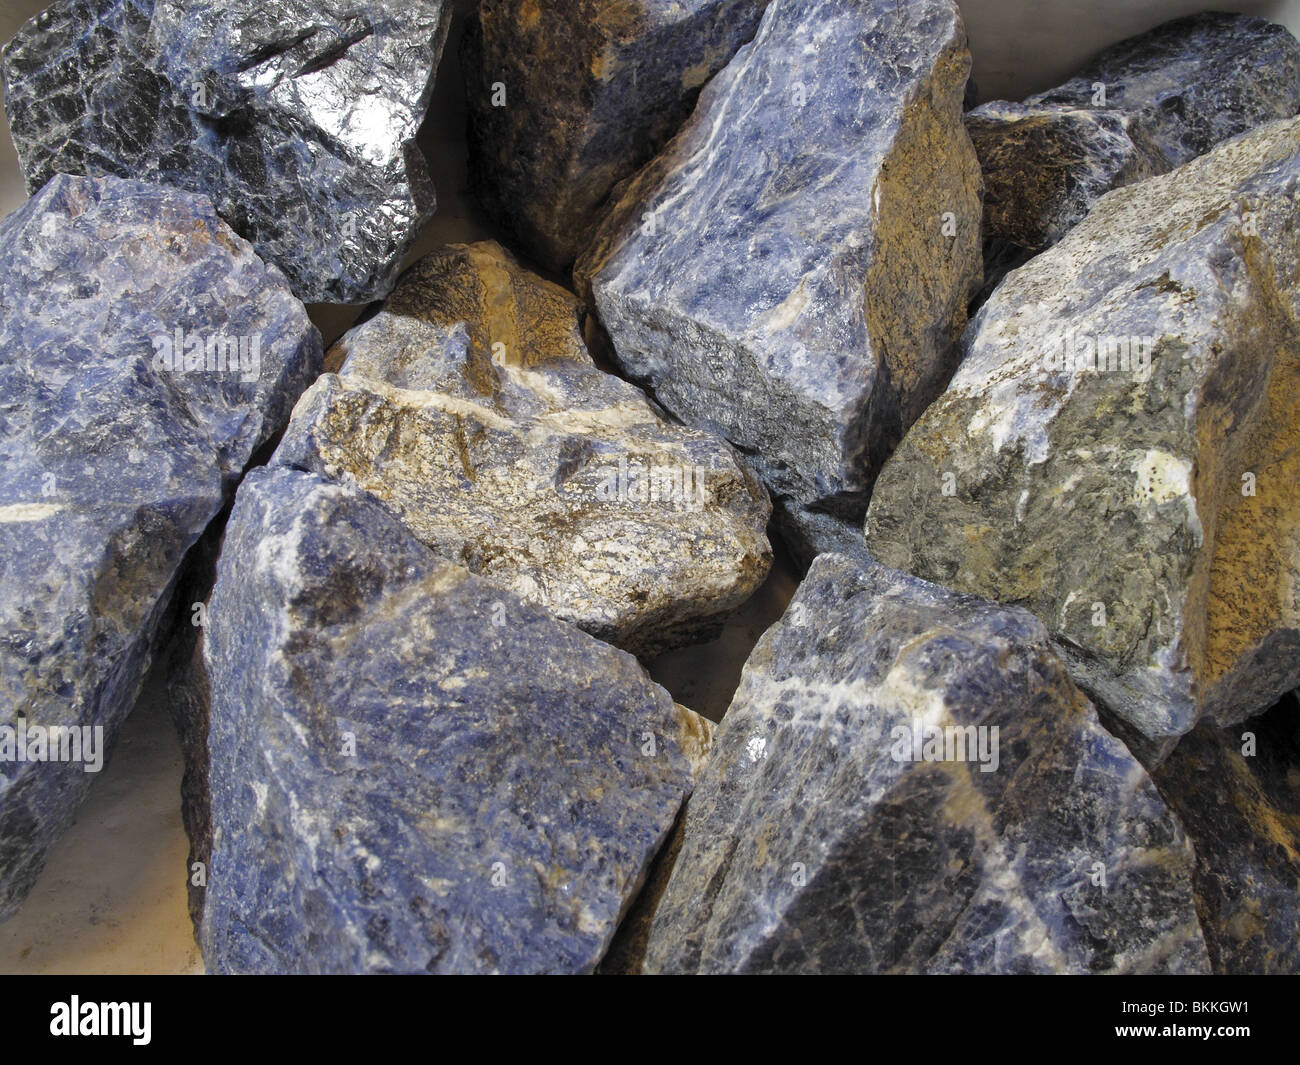 Collecte des matières minérales en pierre semi-précieuses Sodalite (chlorure de sodium Silicate d'aluminium) Banque D'Images